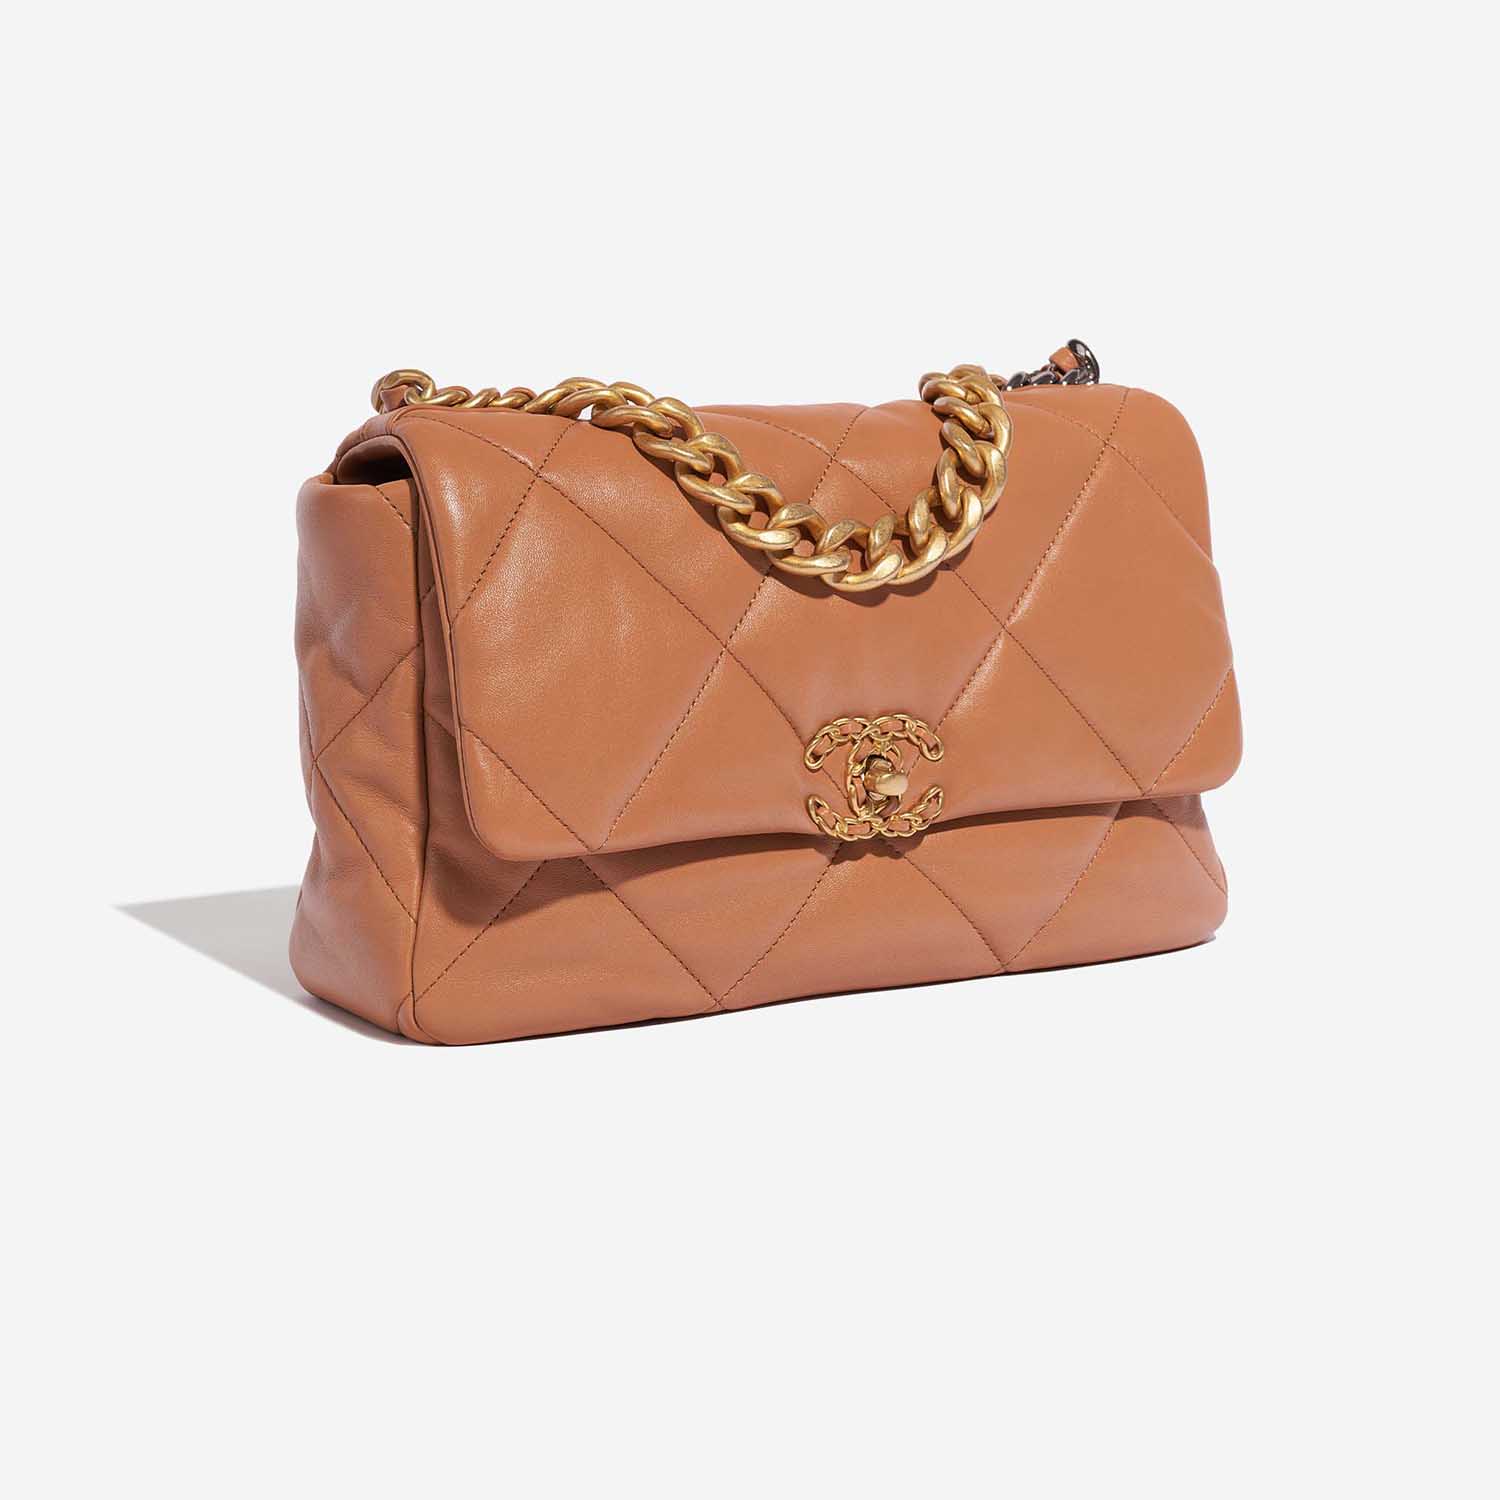 Pre-owned Chanel Tasche 19 Large Flap Bag Lammleder Camel Brown Side Front | Verkaufen Sie Ihre Designer-Tasche auf Saclab.com